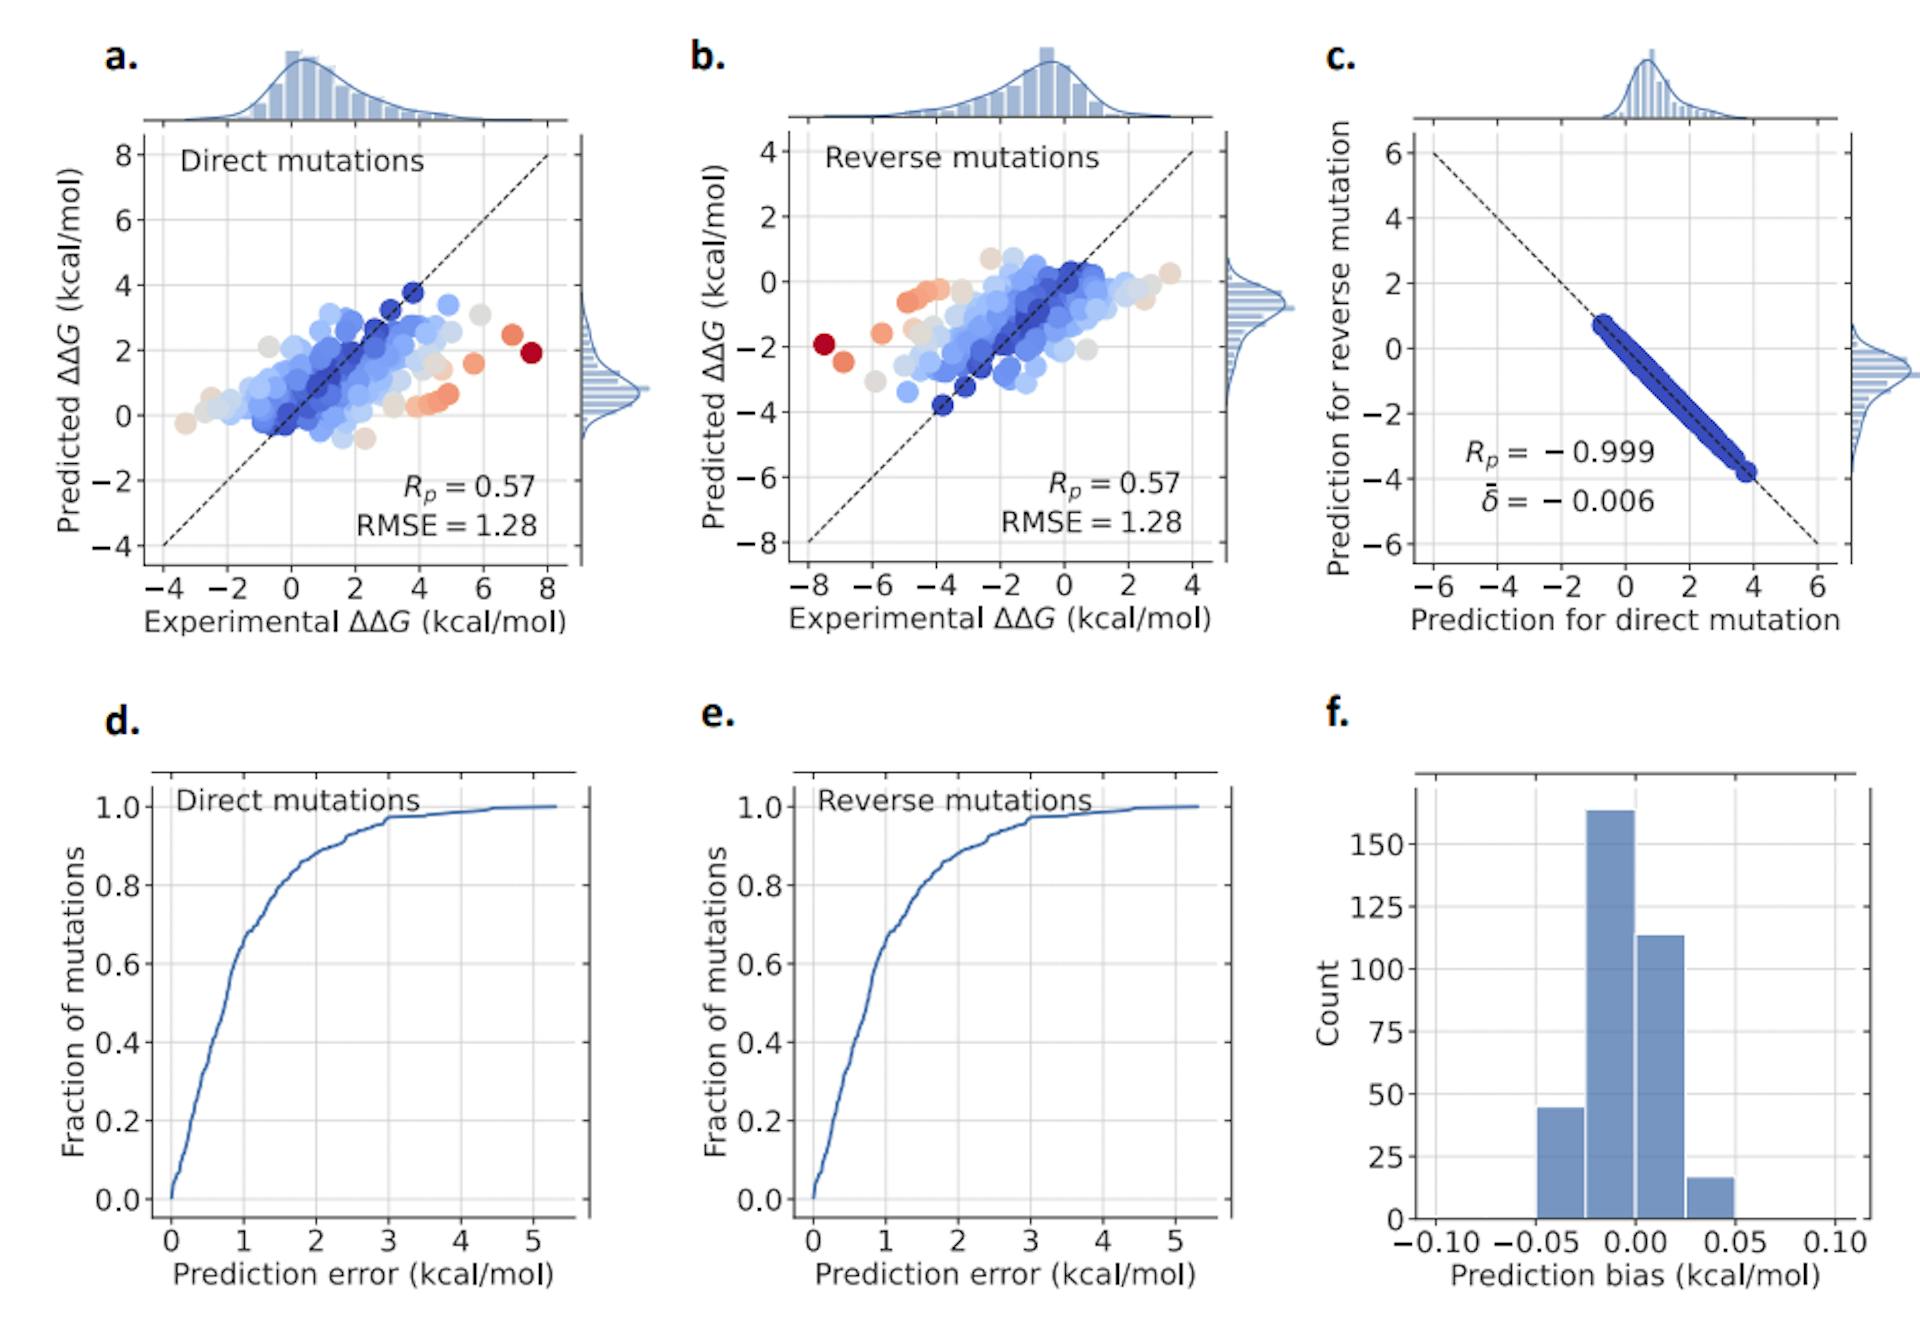 Figura 3: Resultados do nosso modelo GGL-PPI2 para conjunto de dados Ssym. Em (a), as mutações diretas são plotadas, enquanto (b) apresenta os resultados para mutações reversas. O espectro de cores, variando de azul a vermelho, representa a precisão de previsão correspondente – onde azul significa maior precisão e vermelho indica menor precisão. A